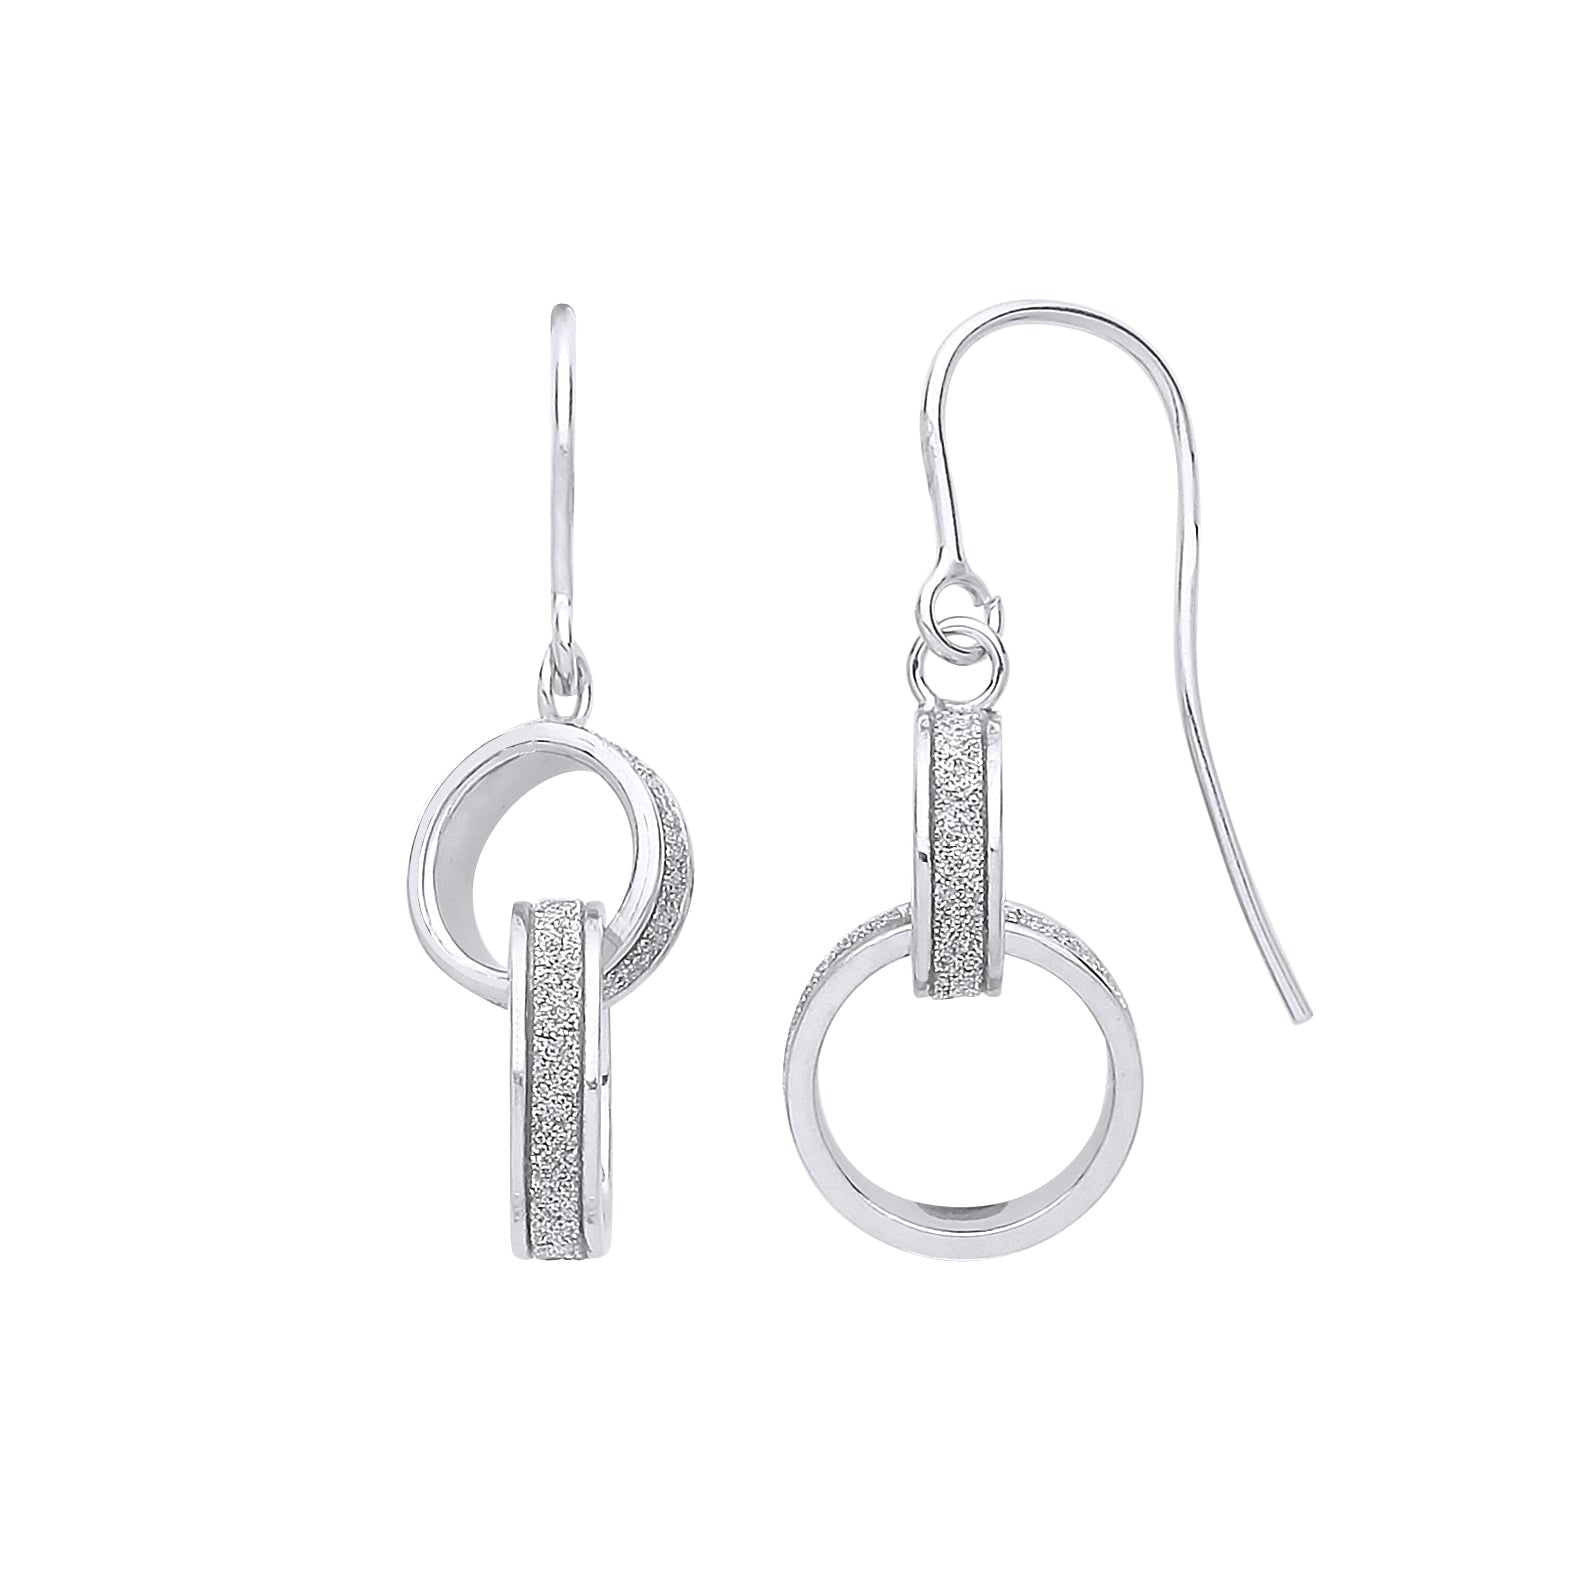 Silver  Interlocked Rings Moondust Drop Earrings - GVE889